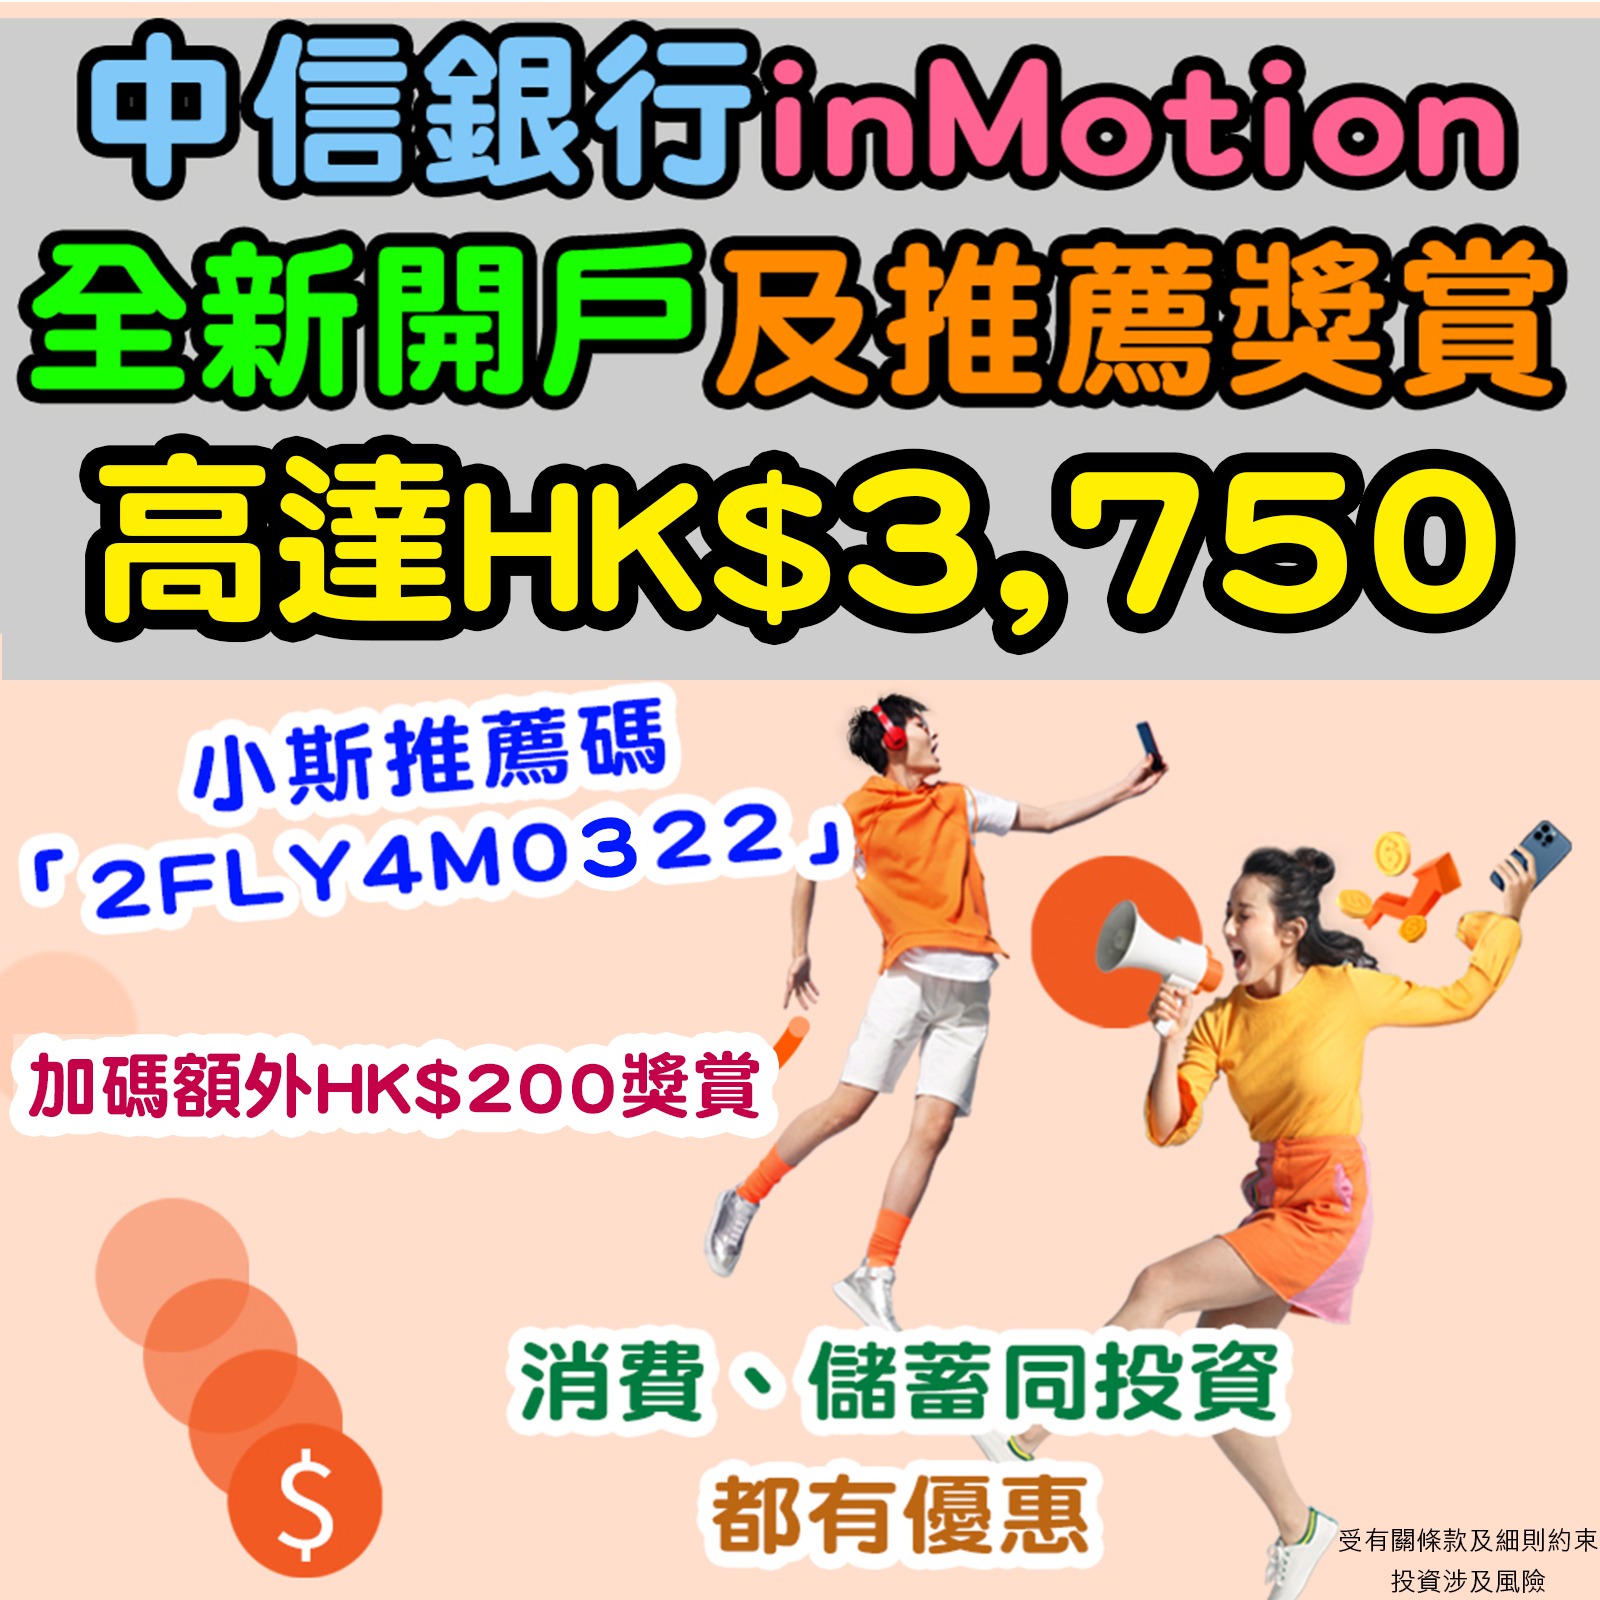 【中信銀行inMotion優惠】輸入小斯推薦碼「2FLY4M0322」再多$200！全新開戶獎賞高達HK$3,750！